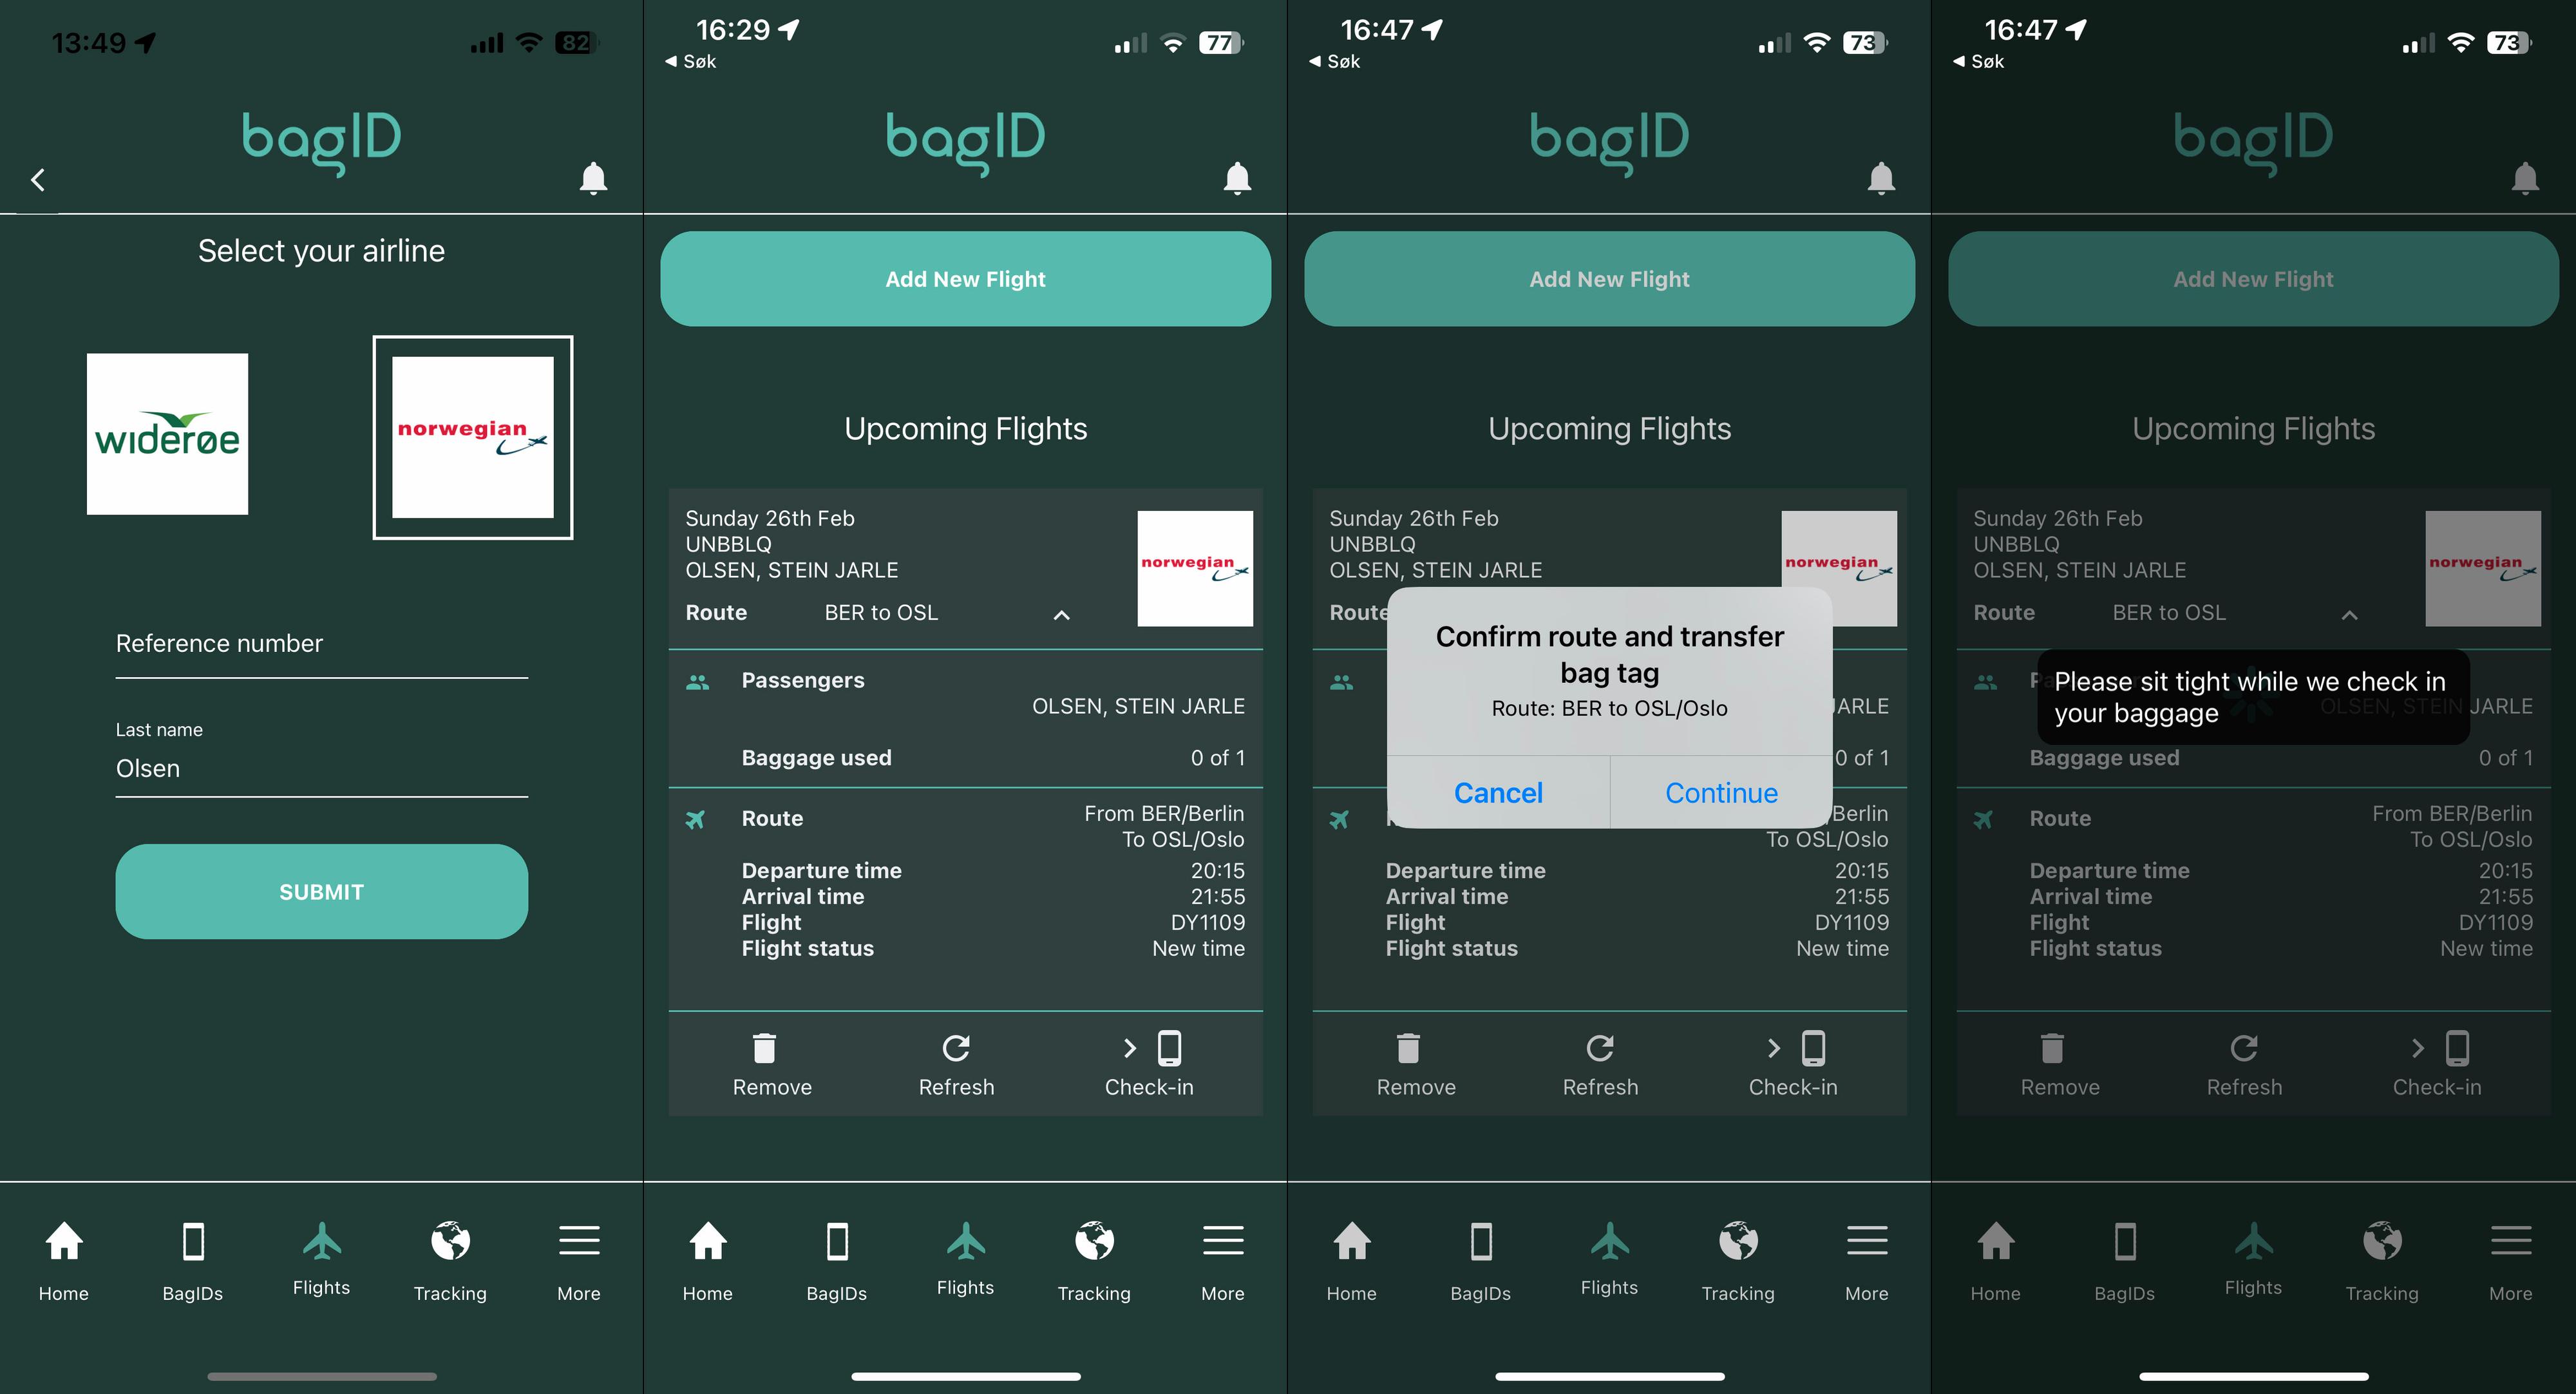 Slik sjekker du inn bagasje med BagID. Først må du imidlertid ha sjekket inn i flyselskapets app. 